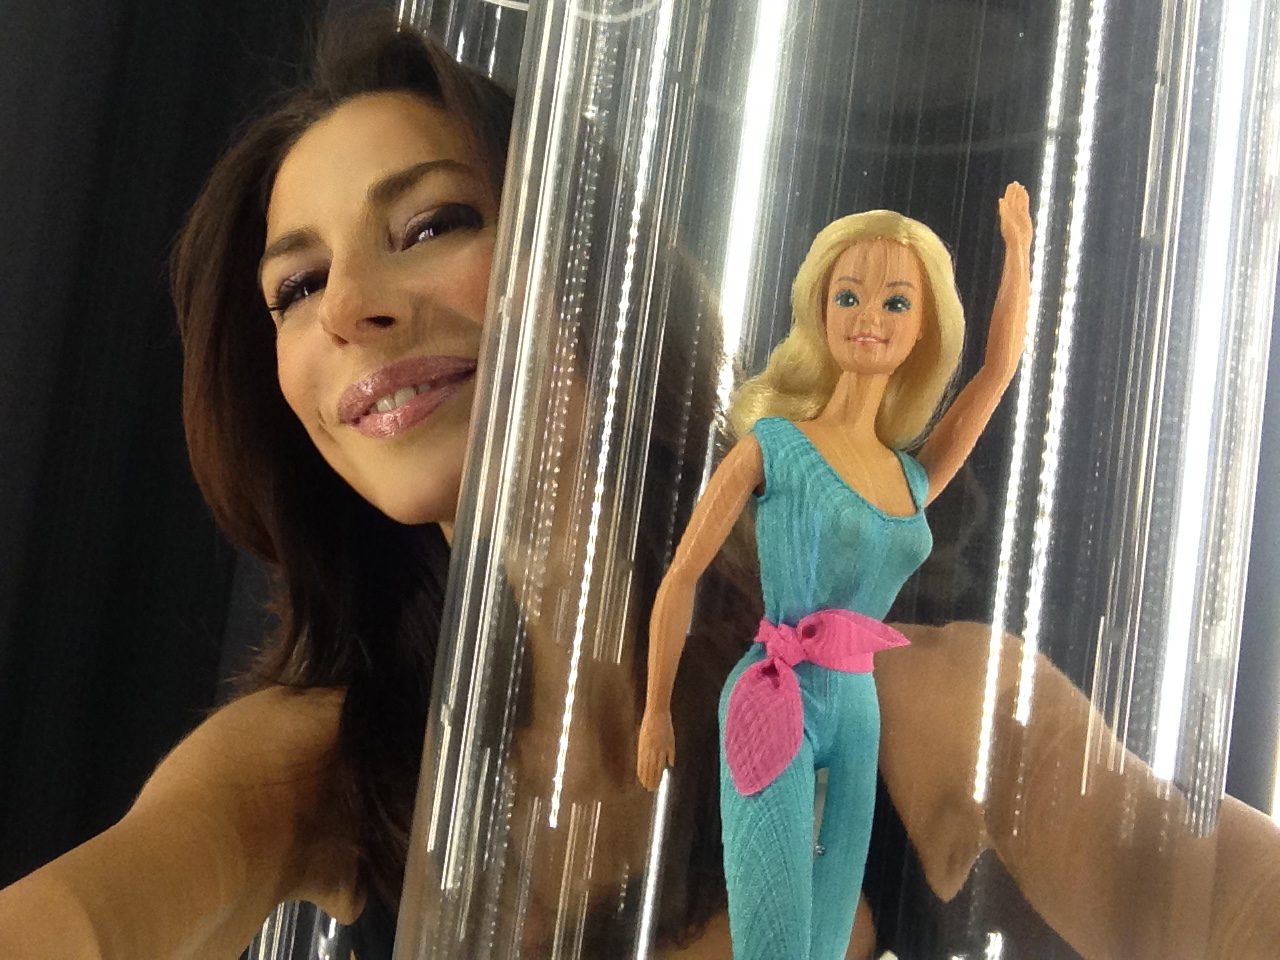 #SELFIEADARTE "Selfie con Barbie" BarbieTheIcon @CleliaPatella #Mudec